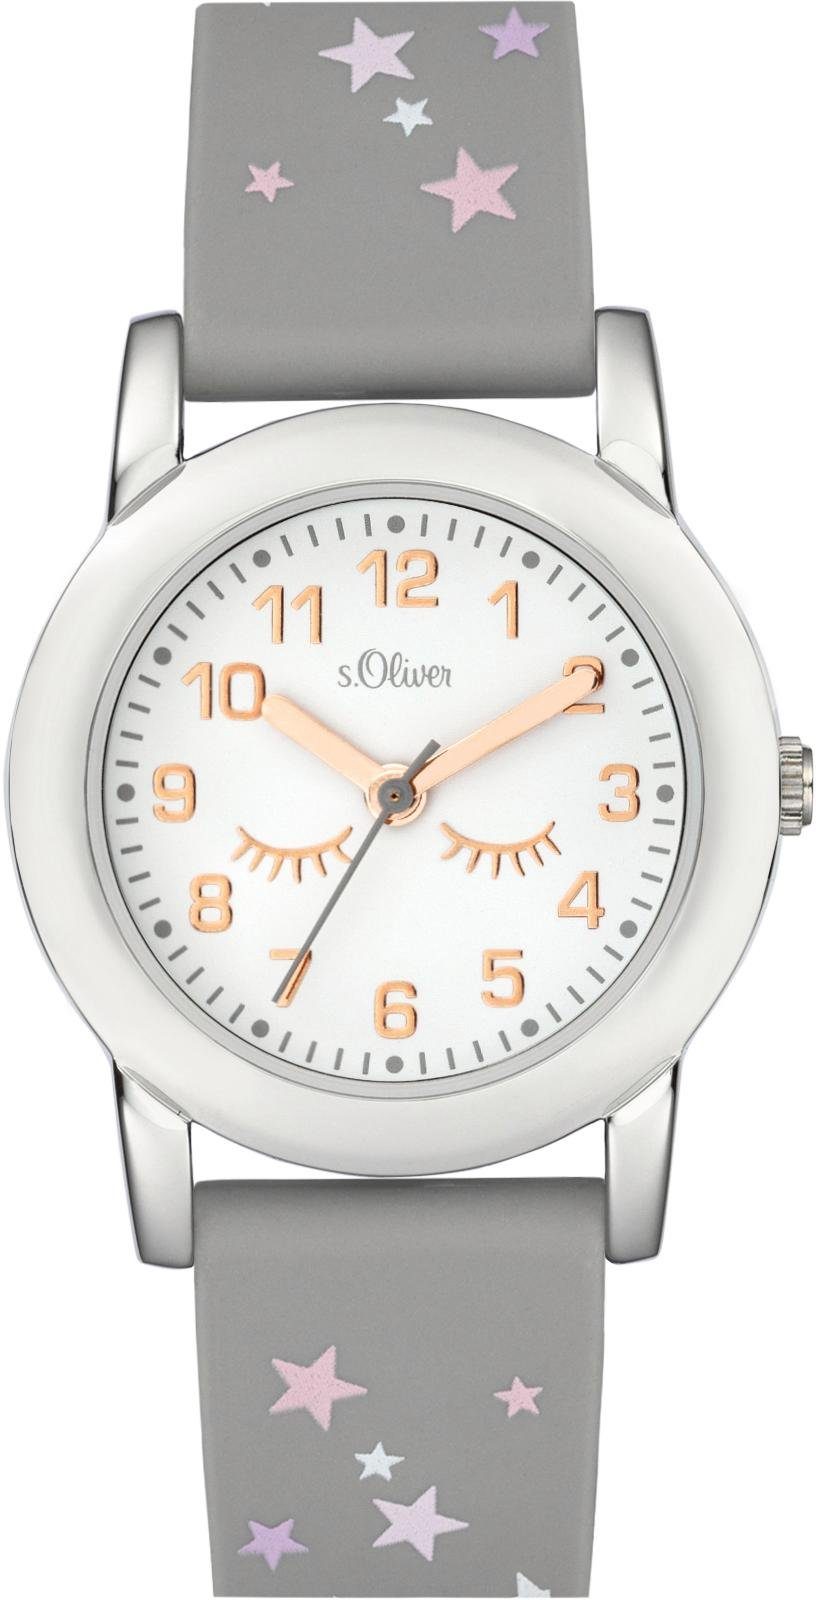 s.Oliver Quarzuhr »SO-3998-PQ« online kaufen | OTTO